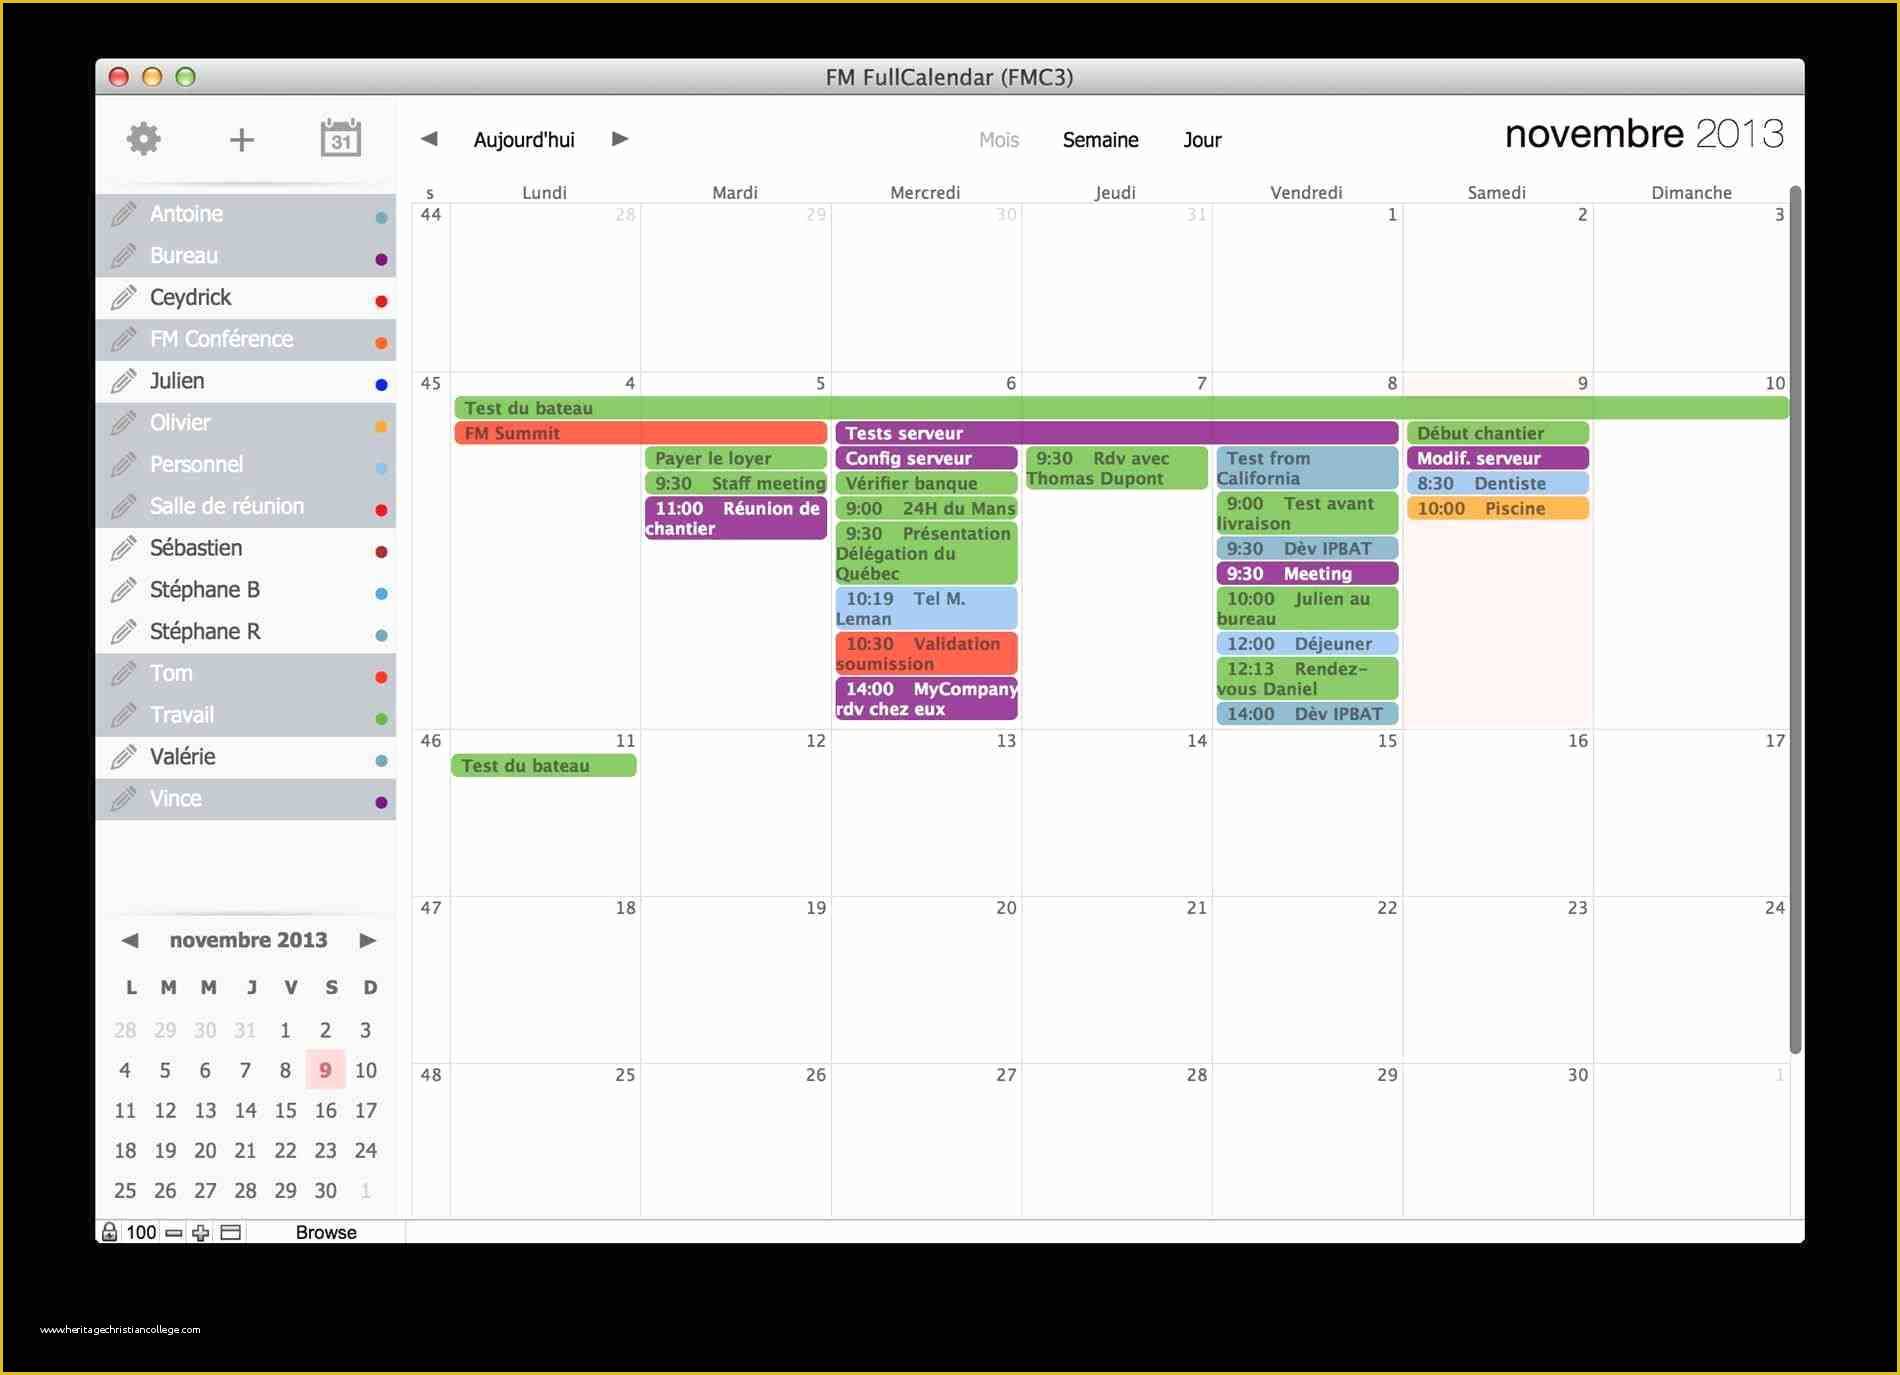 Filemaker Calendar Template Free Of Filemaker Pro Calendar Template Free